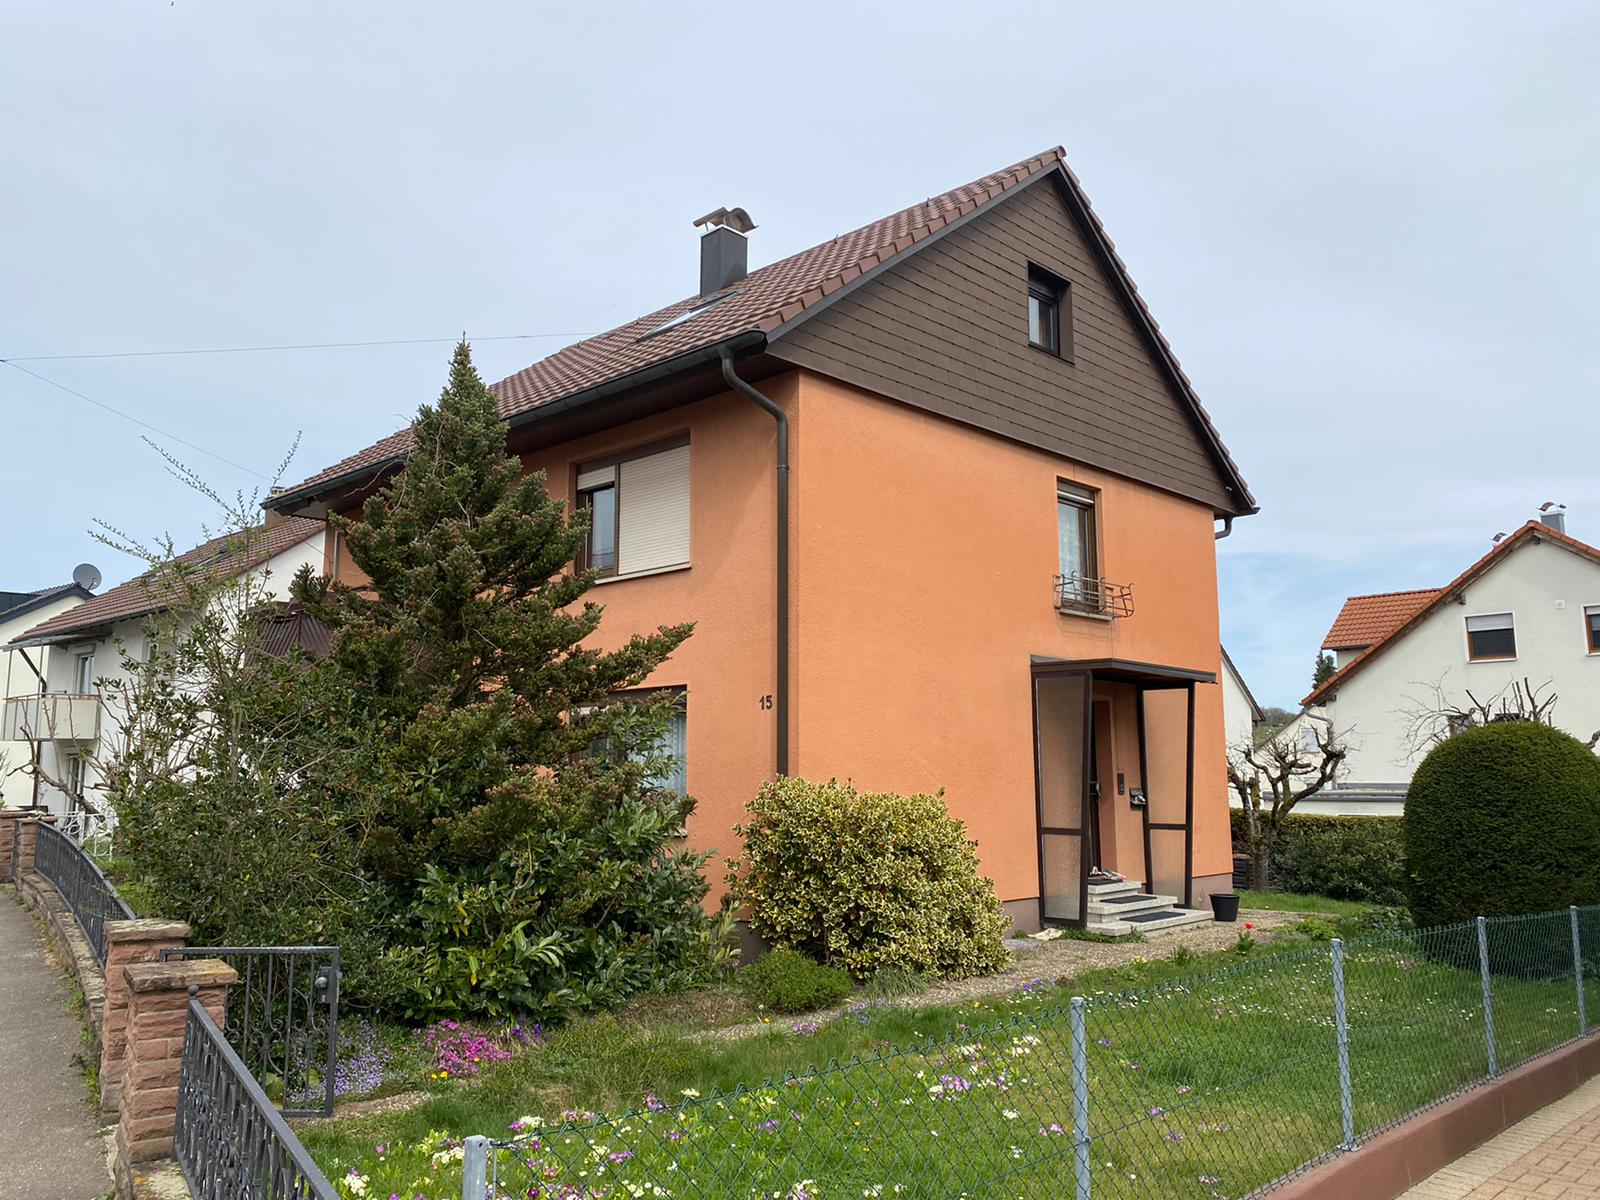 2 Familienhaus Doppelgarage Garten - Wernau